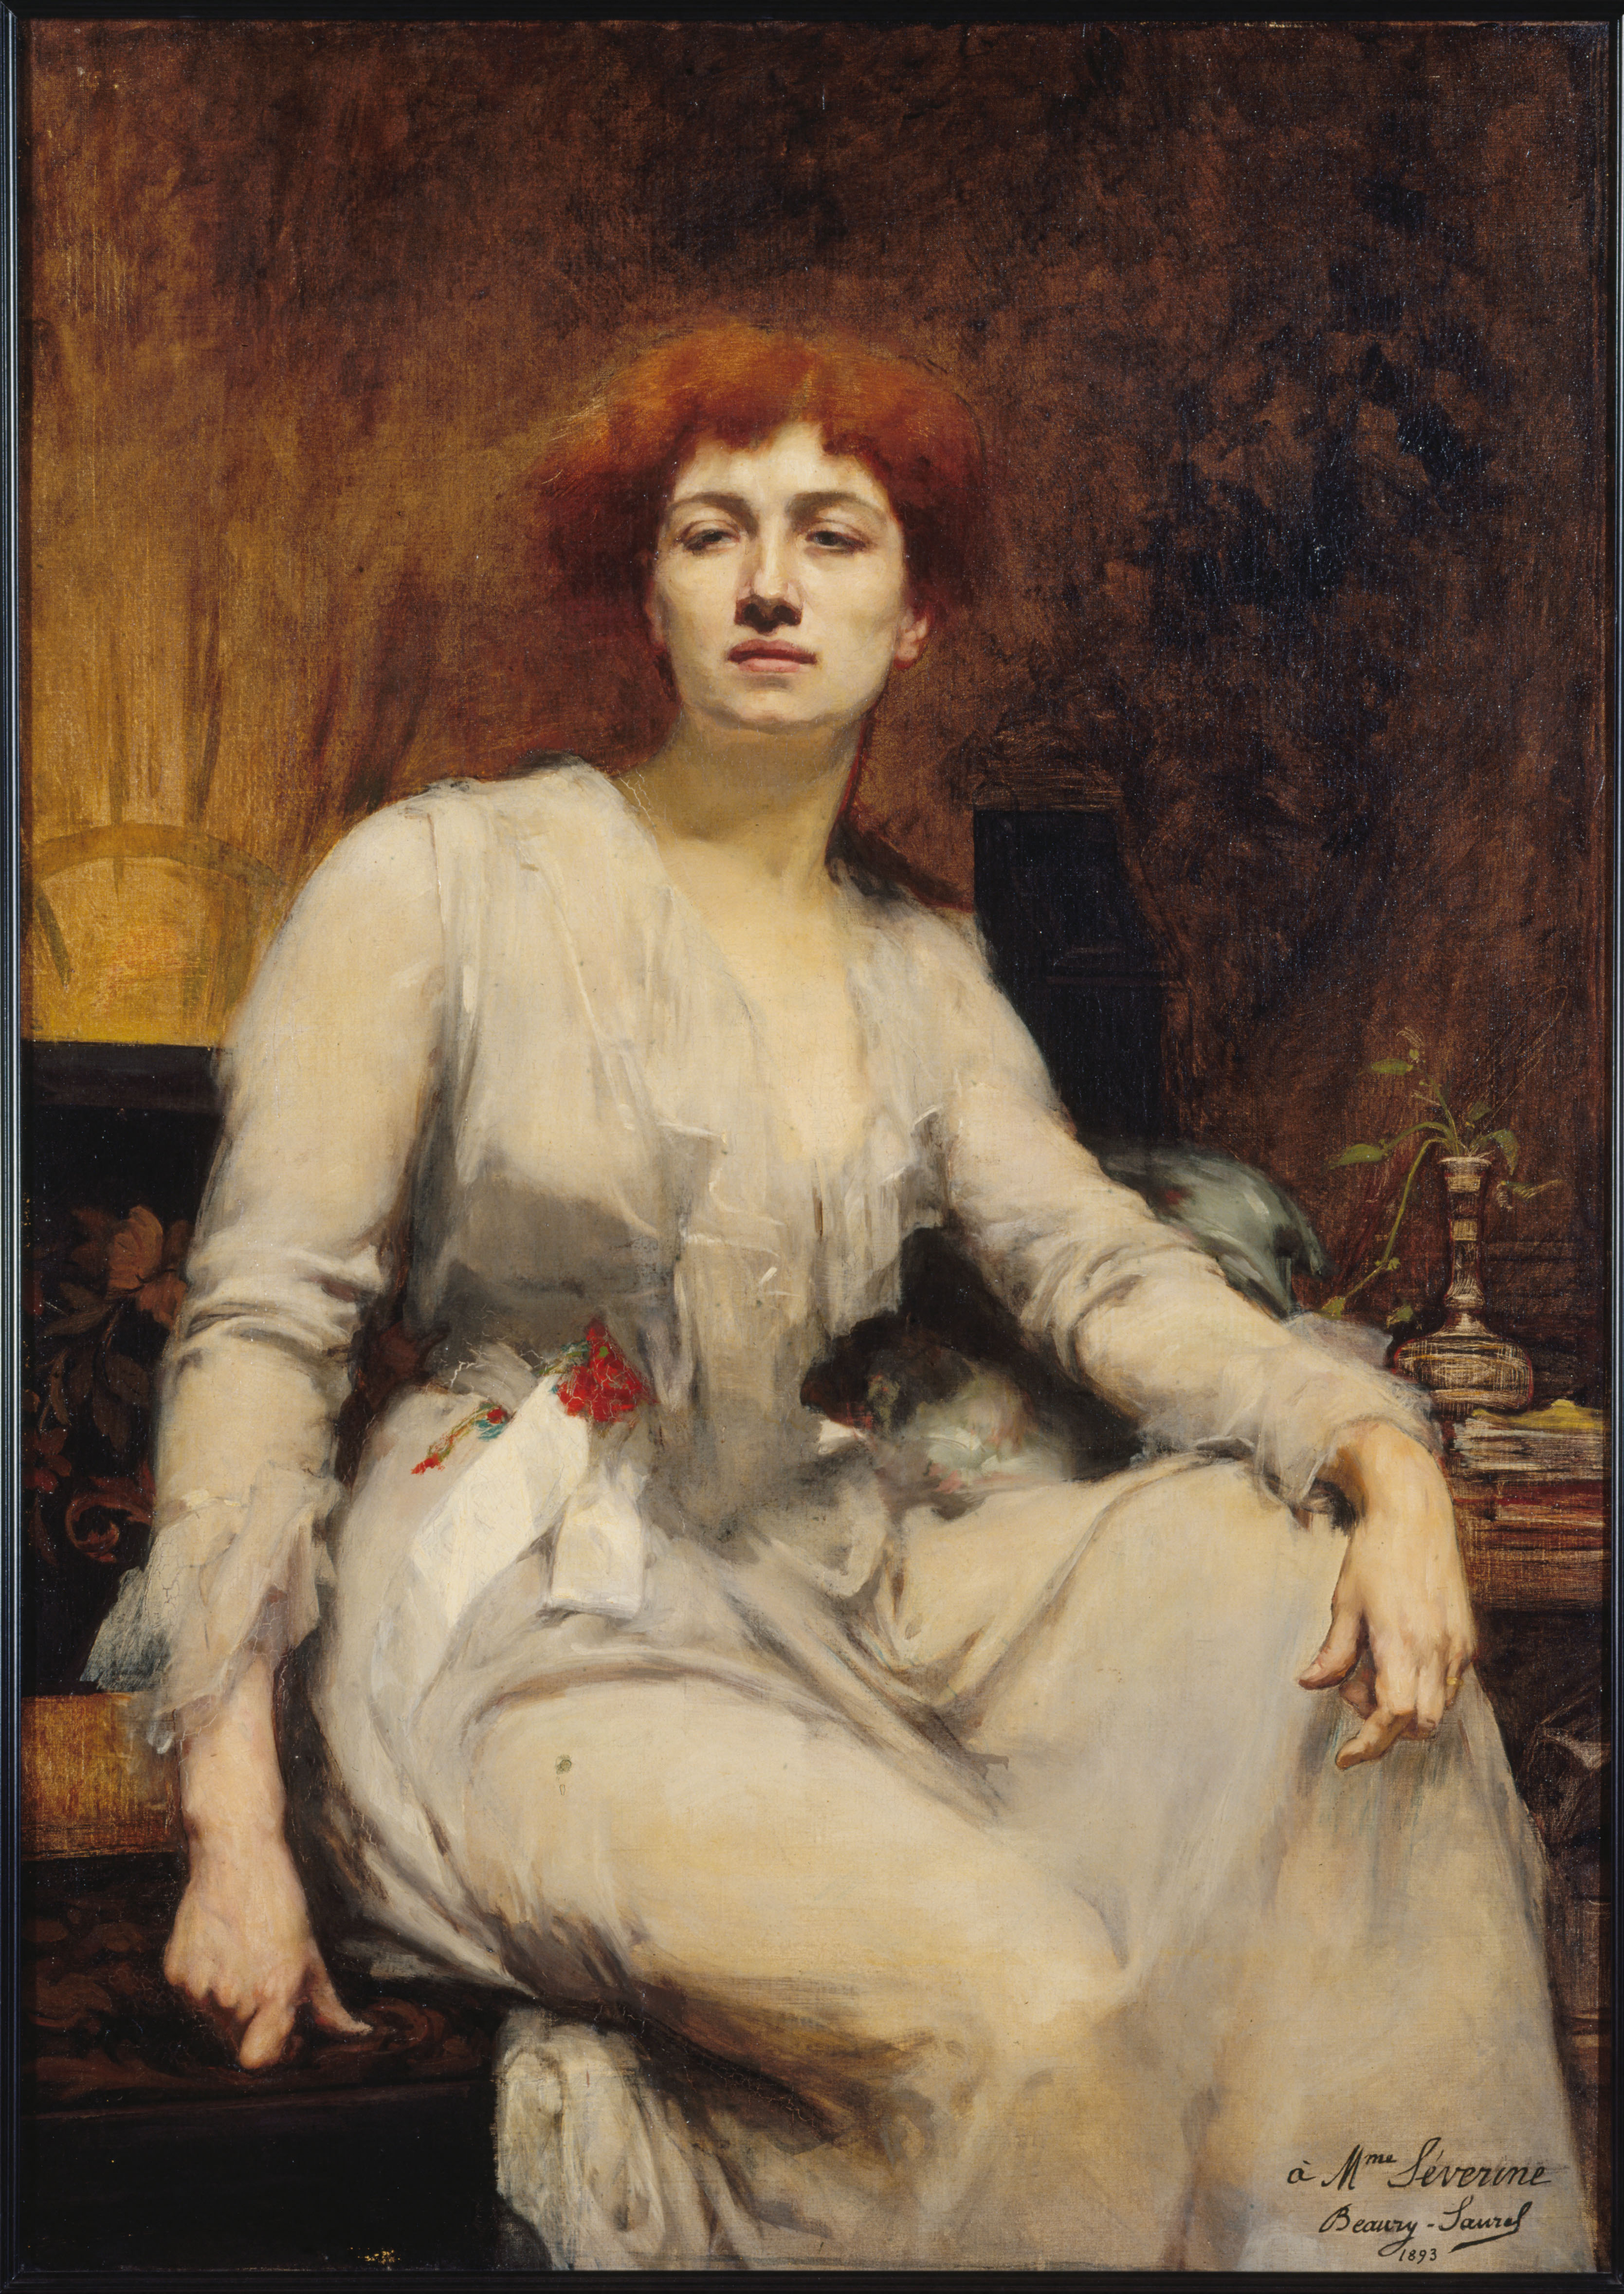 Séverine by Amélie Beaury-Saurel - 1893 - 122.5 x 88 cm 